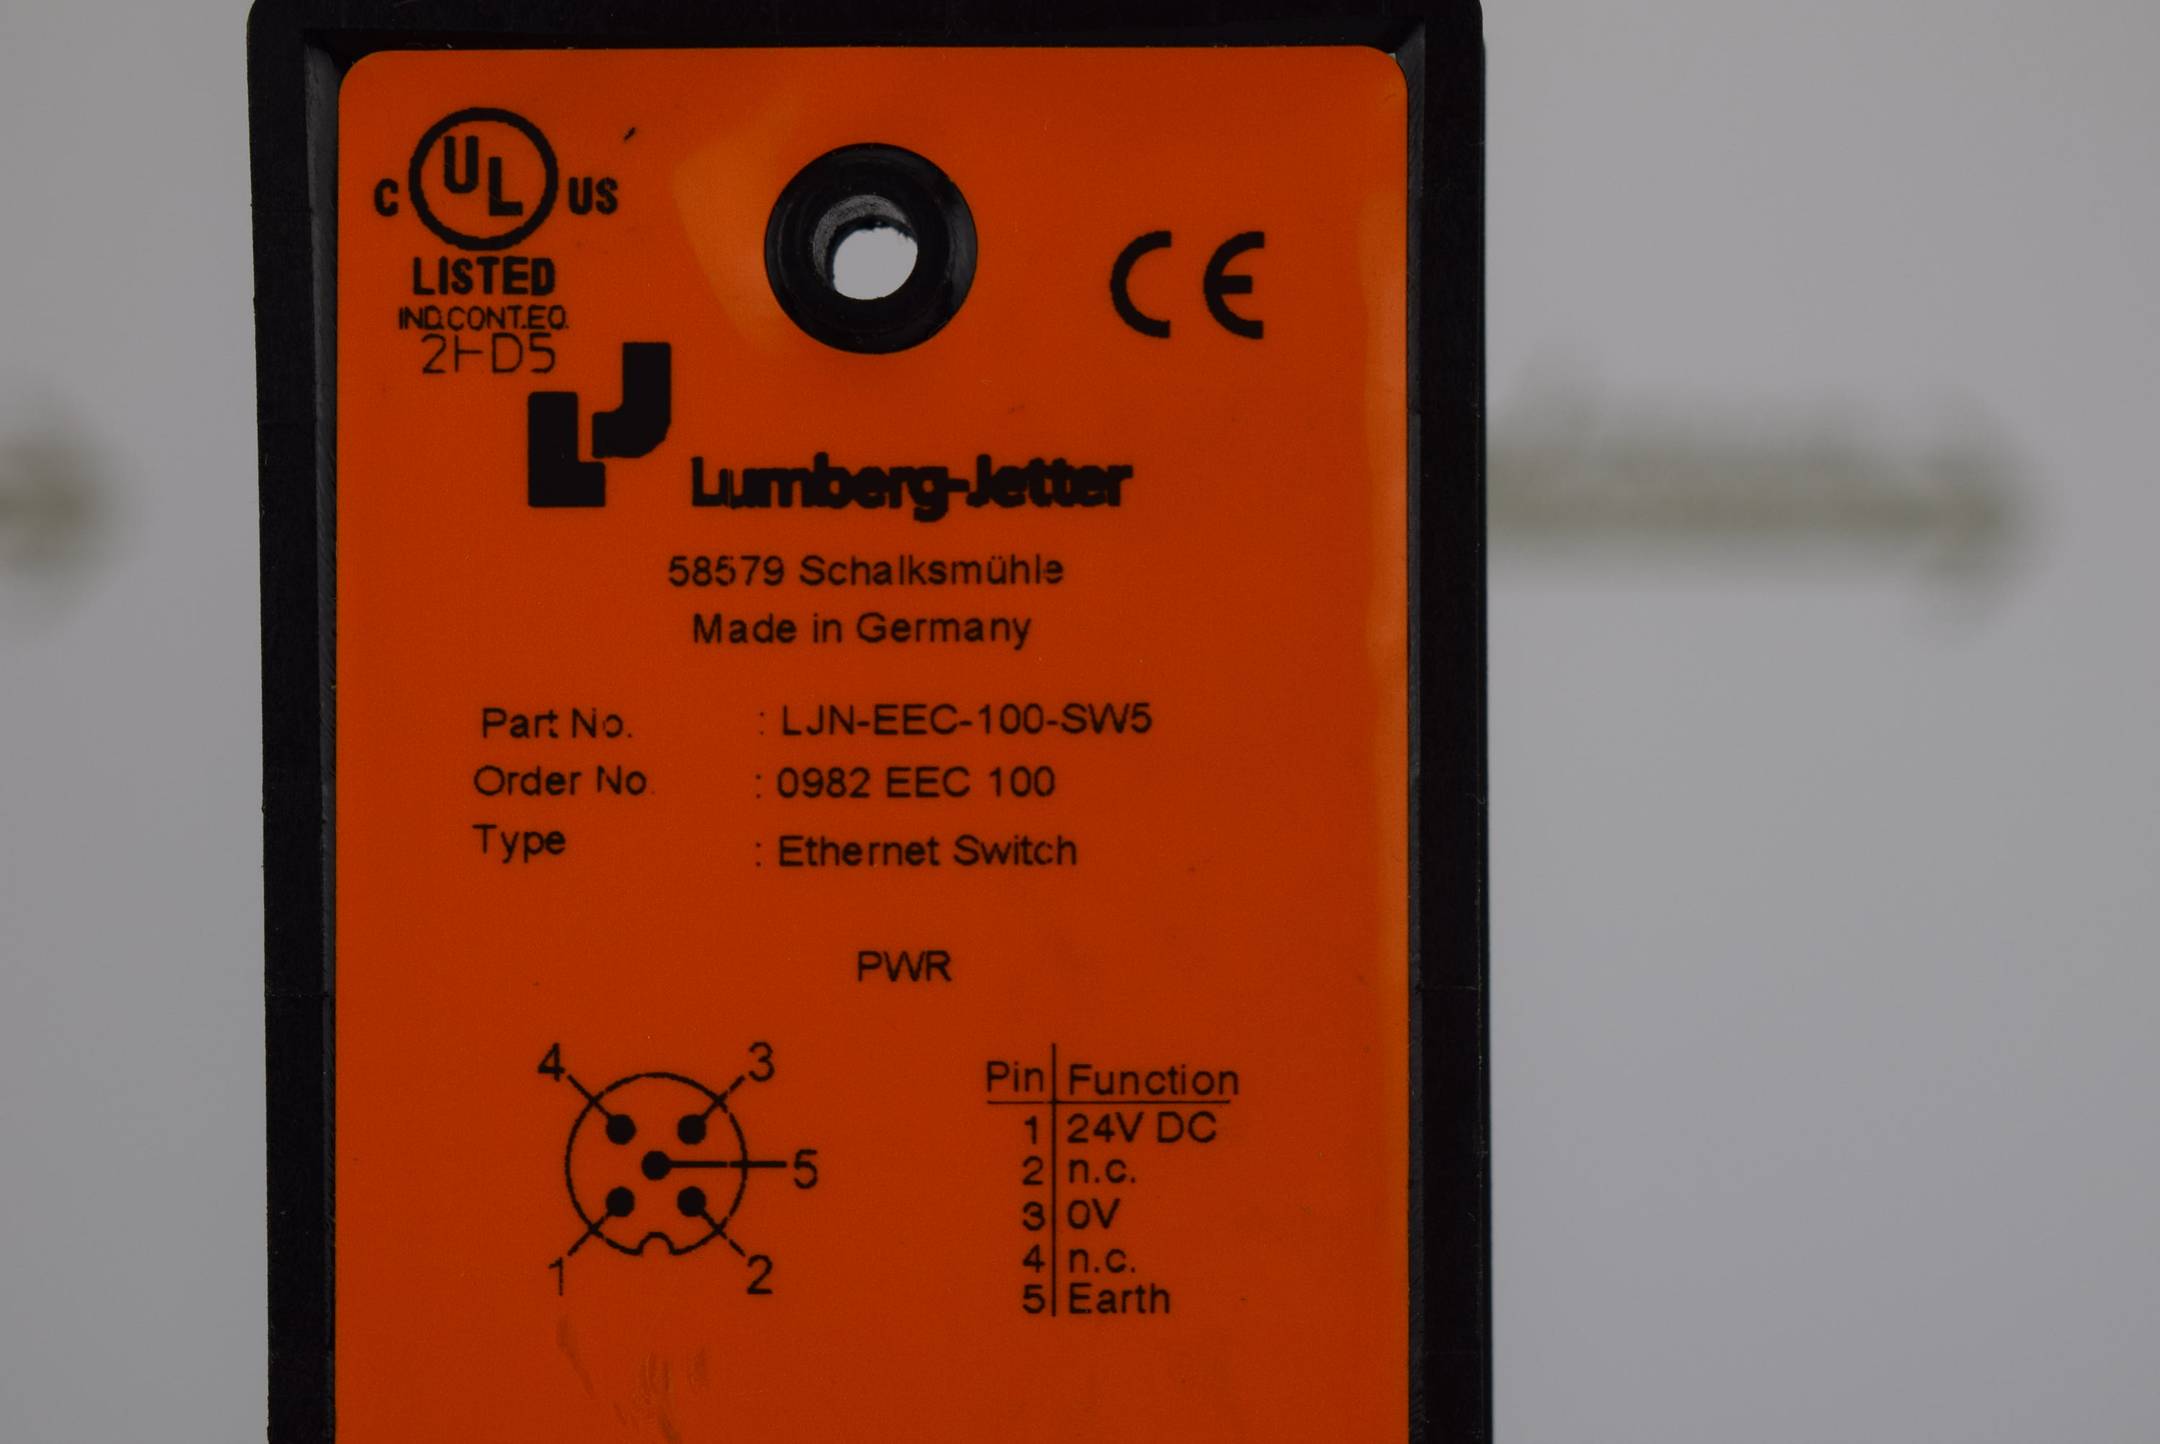 Lumberg Jetter Ethernet Switch LJN-EEC-100-SW5 ( 0982 EEC 100 )